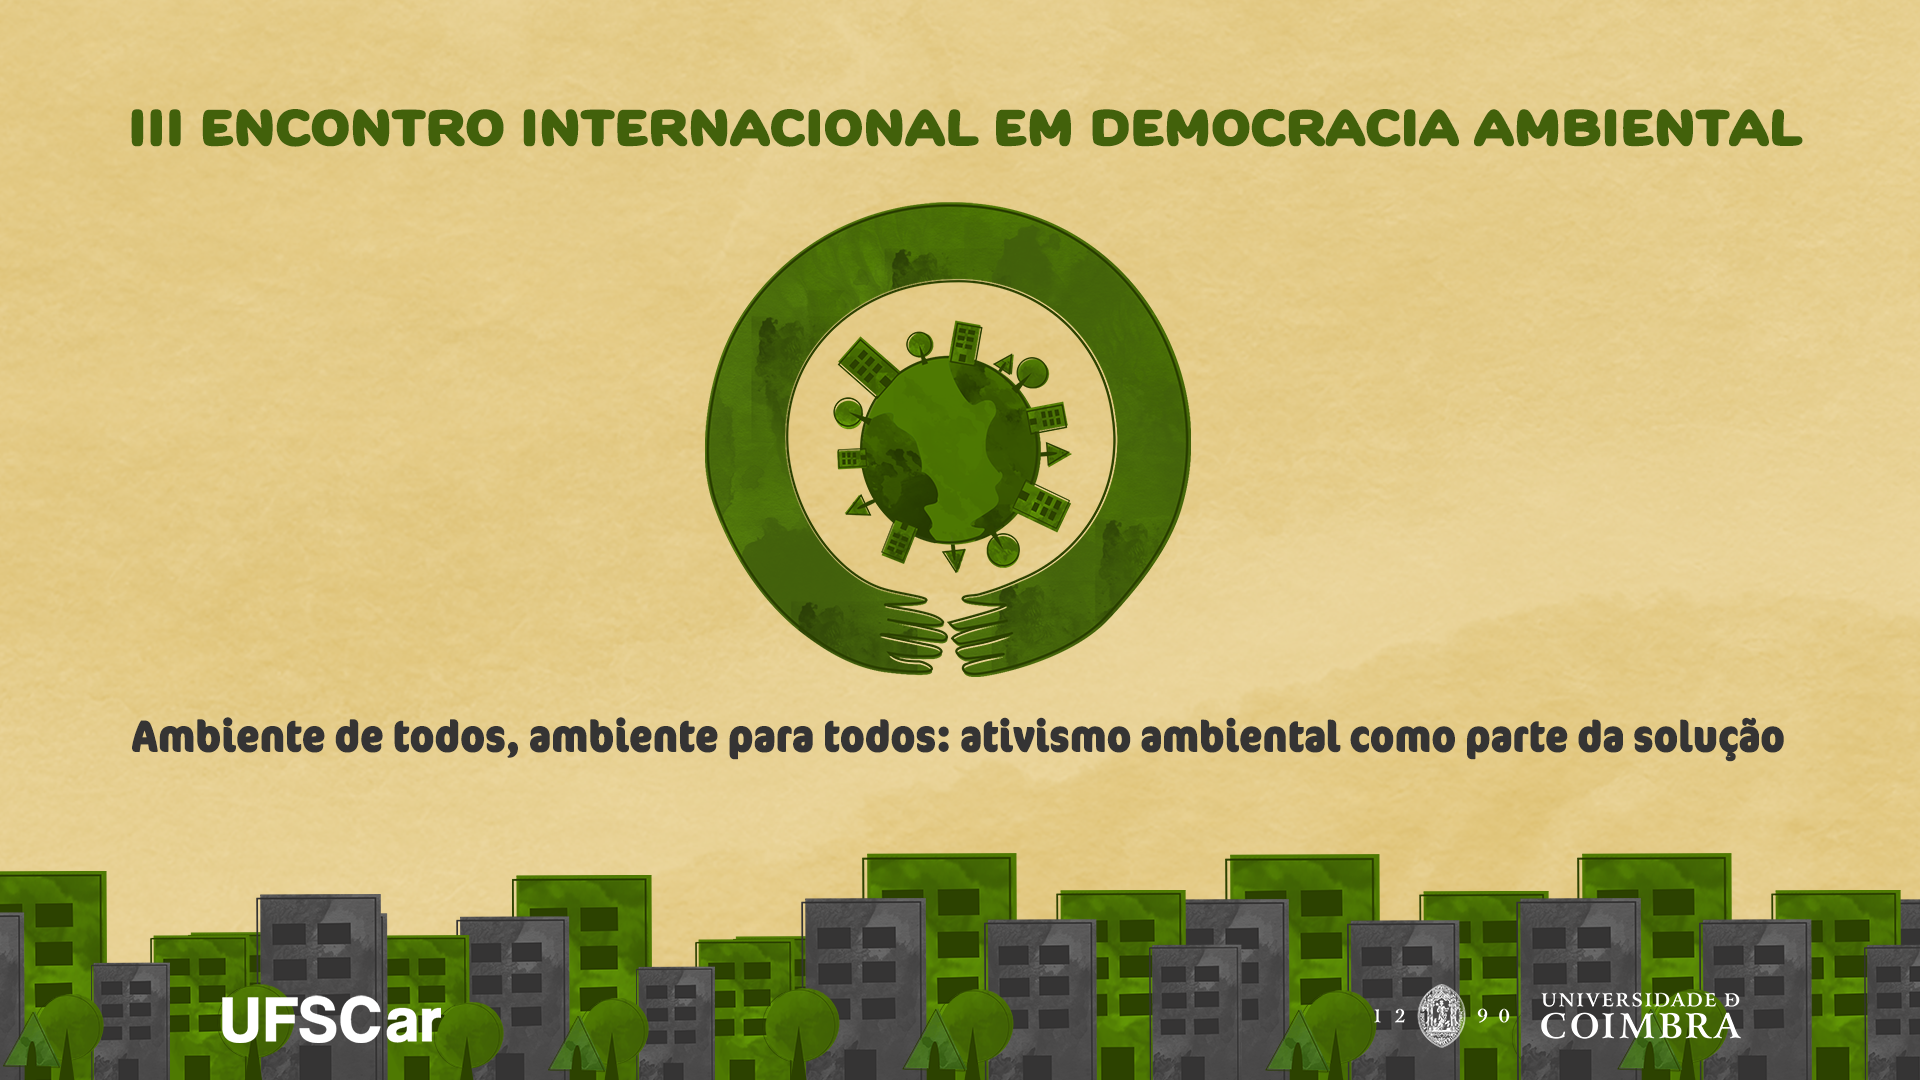 Pesquisadores já podem se inscrever no III Encontro Internacional em Democracia Ambiental